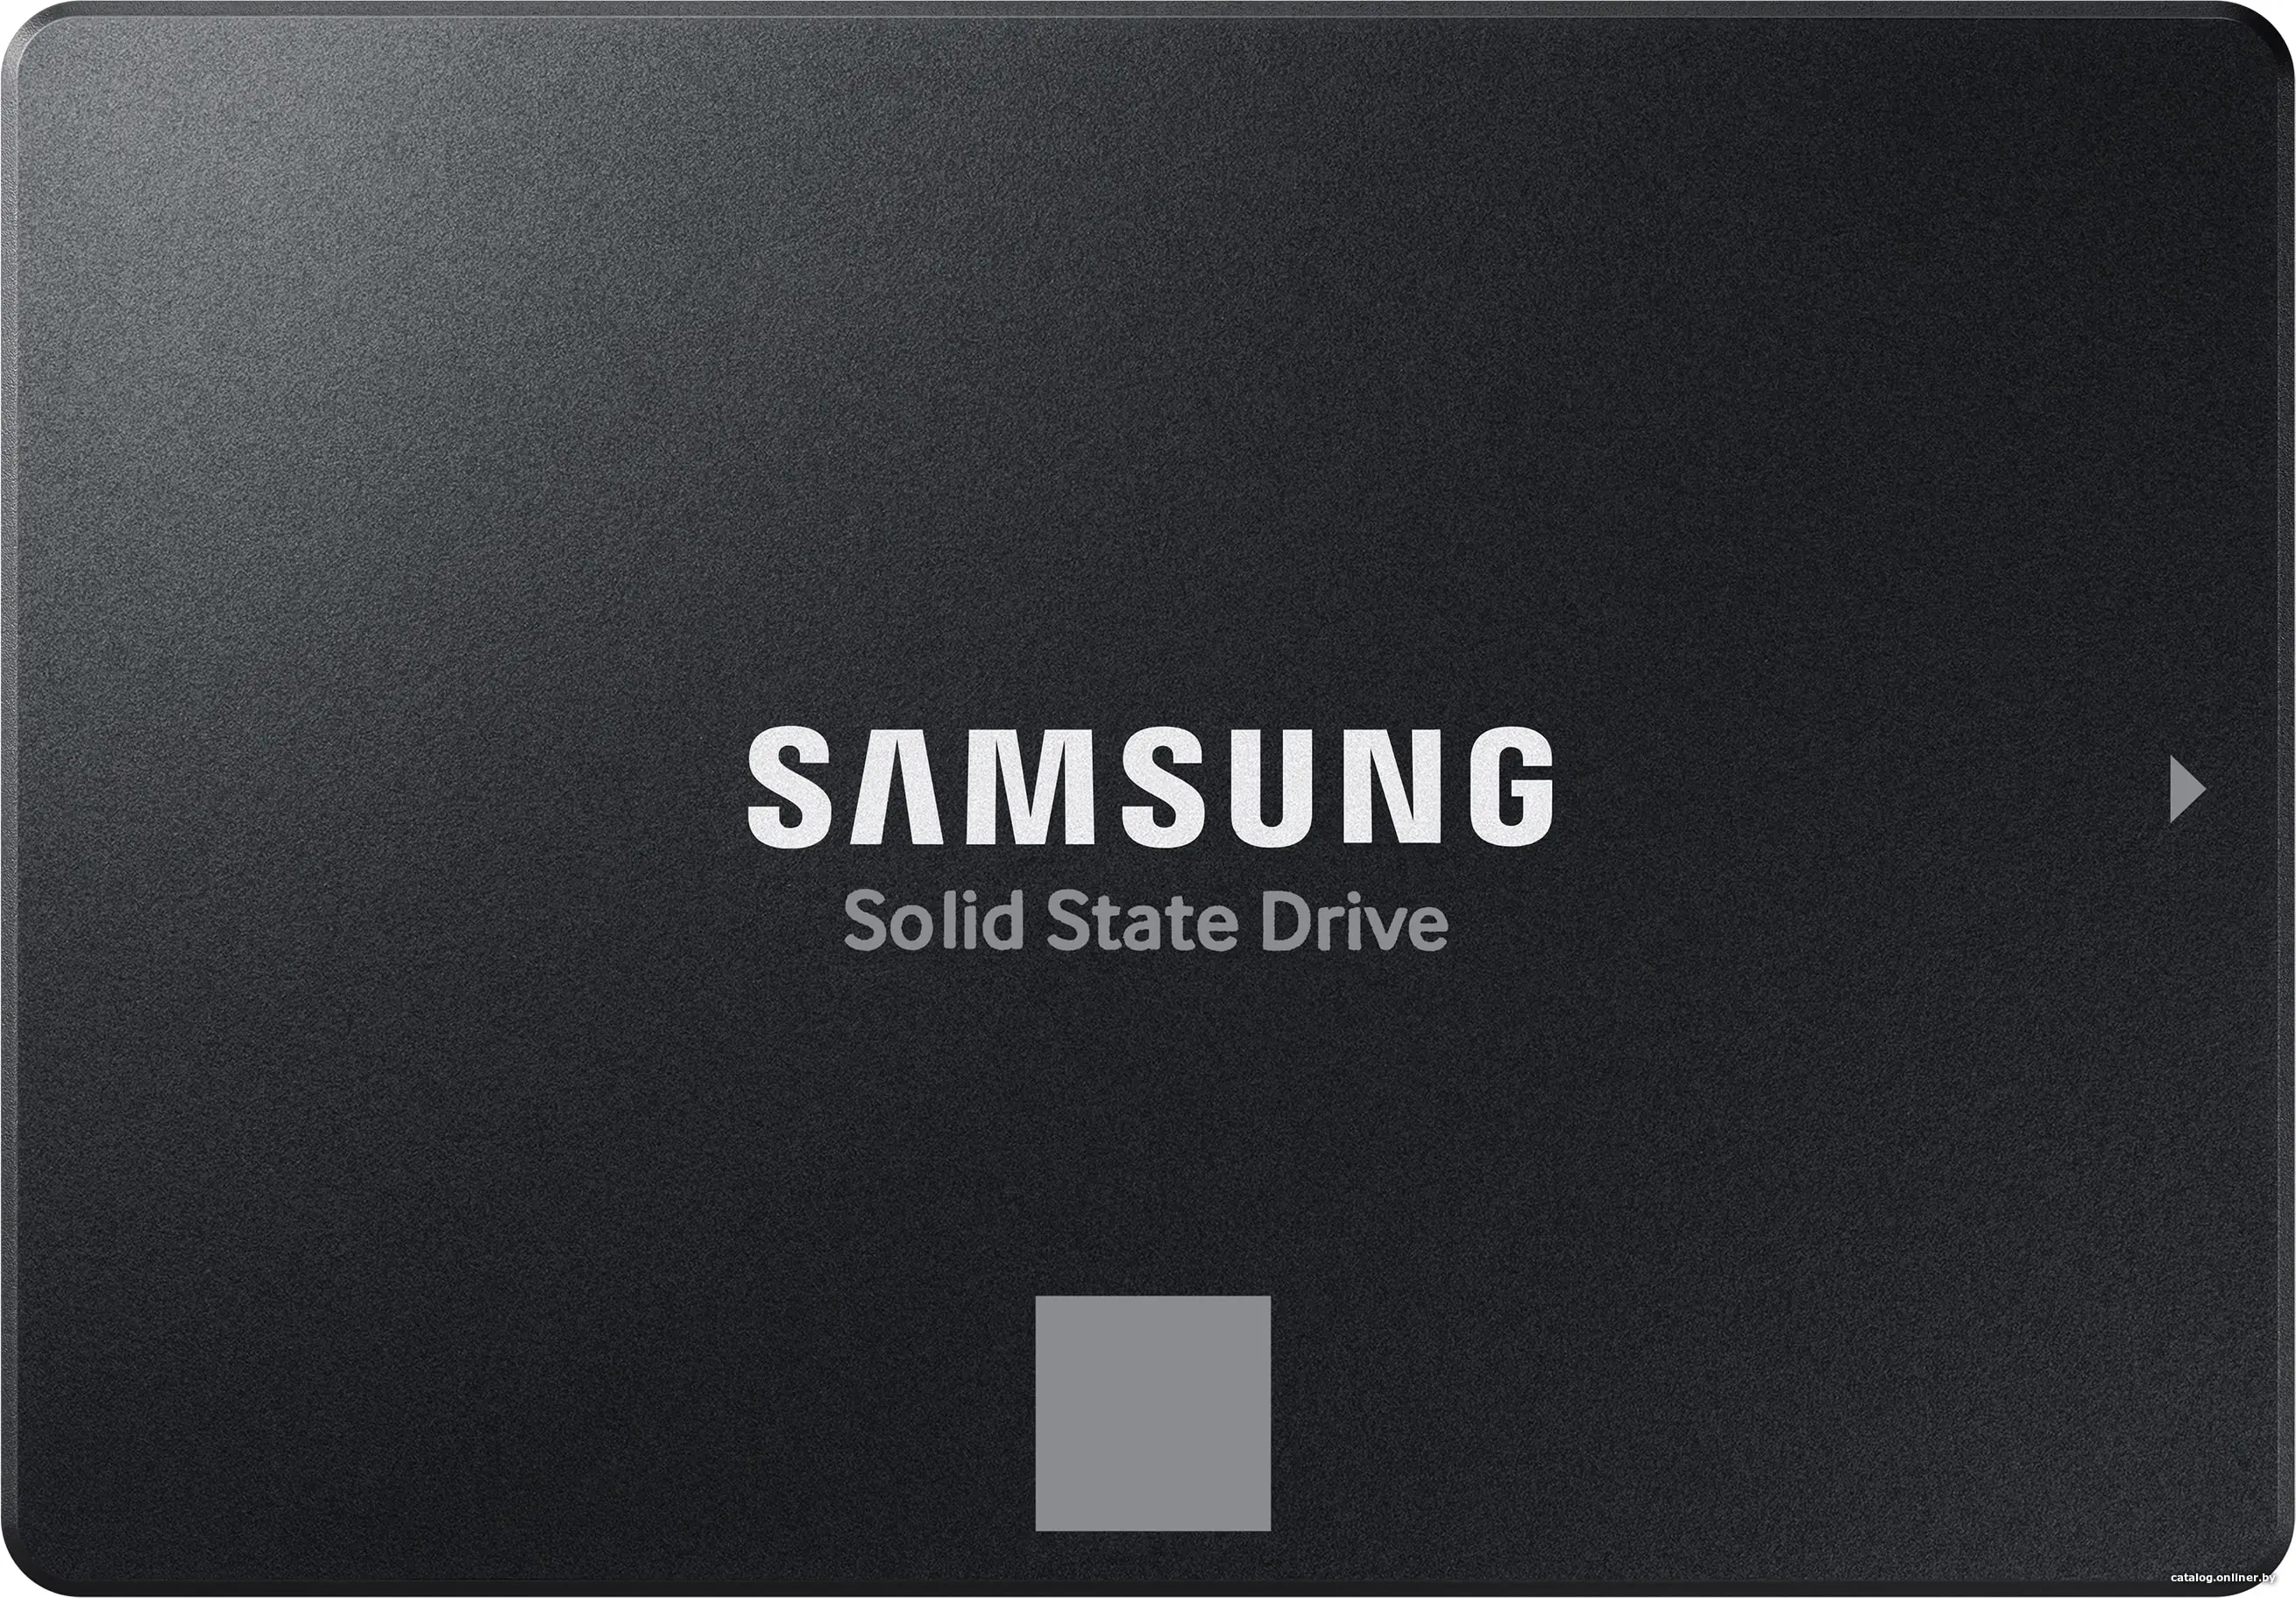 Купить SSD диск Samsung 870 Evo 250GB (MZ-77E250BW), цена, опт и розница